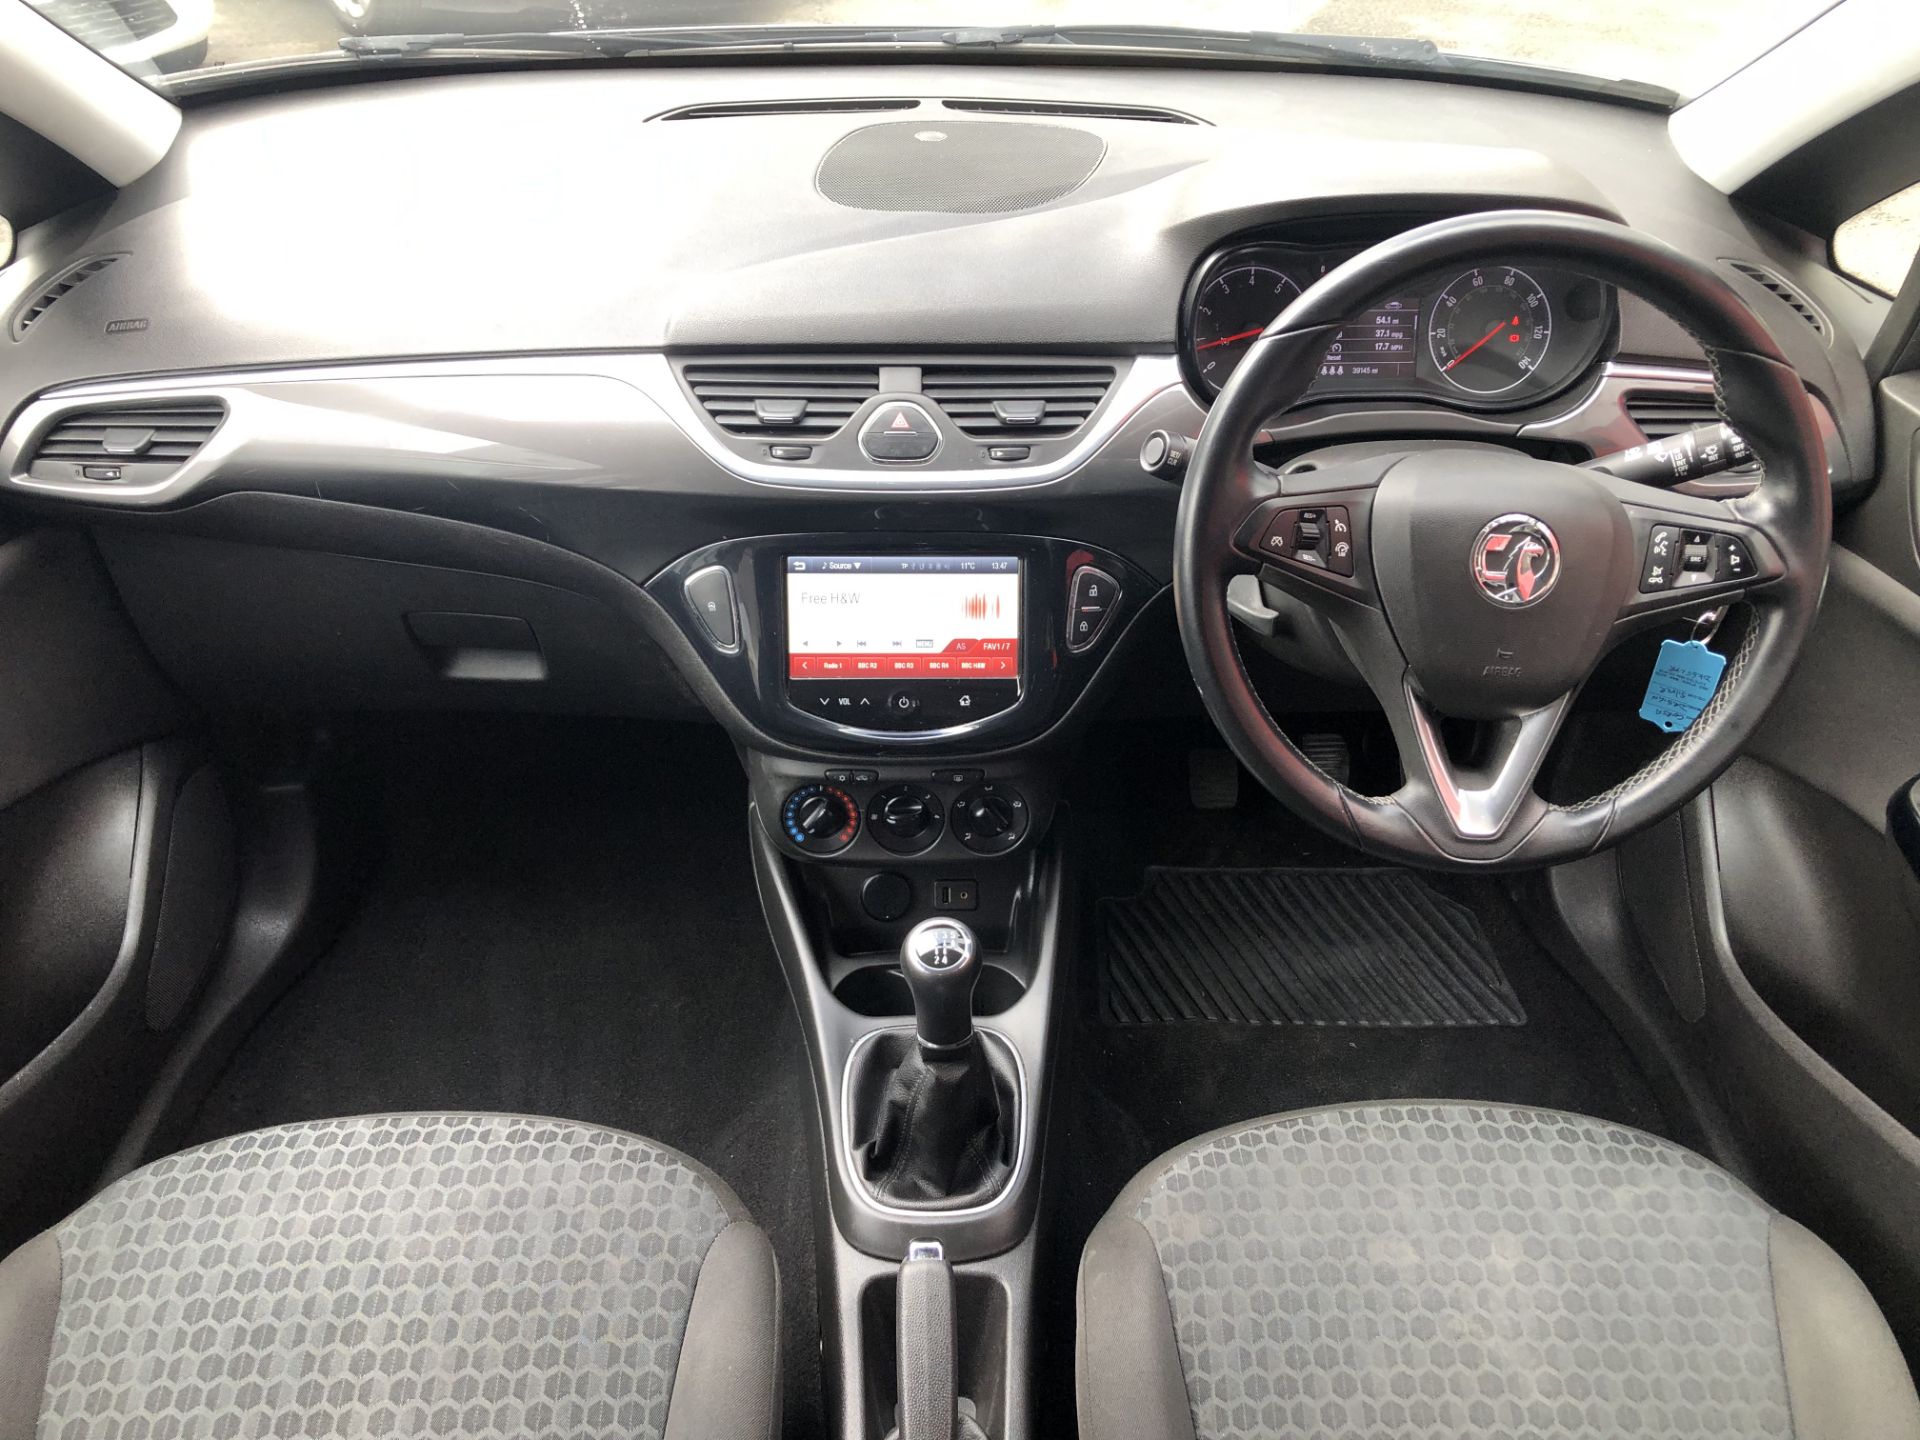 Vauxhall Corsa 1.4 (90ps) Design 5dr, Registration: DK65LYR, Date First Registered: 22/10/2015, - Image 6 of 7